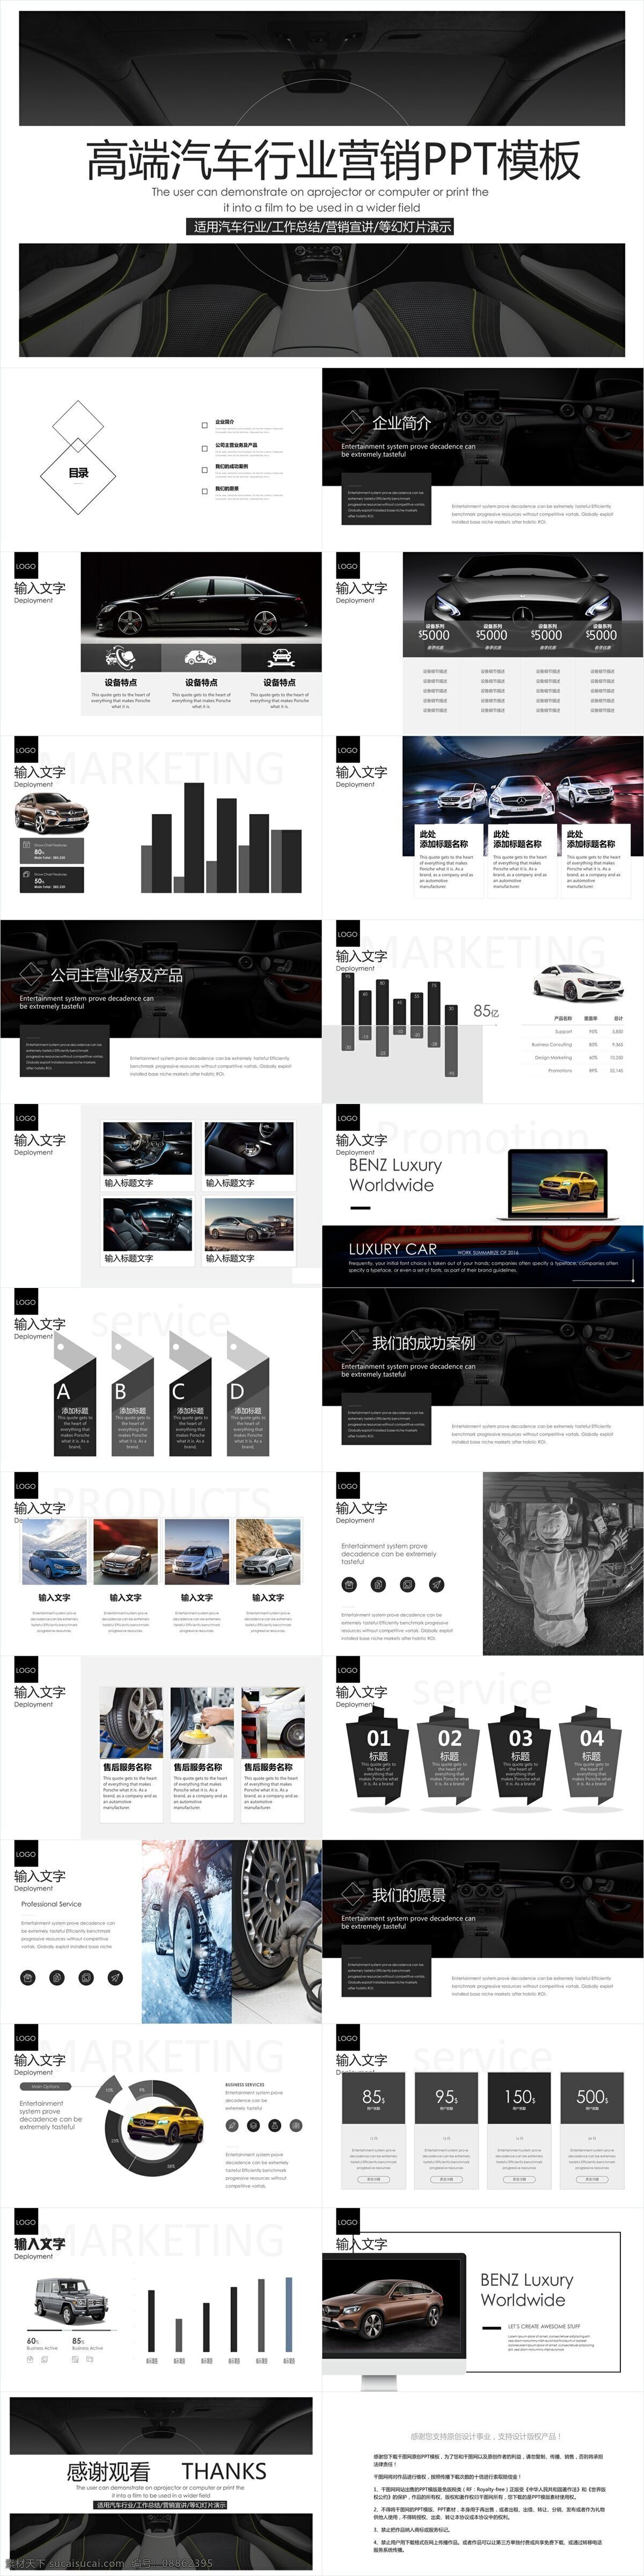 高端 汽车行业 营销 模板 创意 画册 企业简介 企业宣传 产品介绍 商务合作 策划